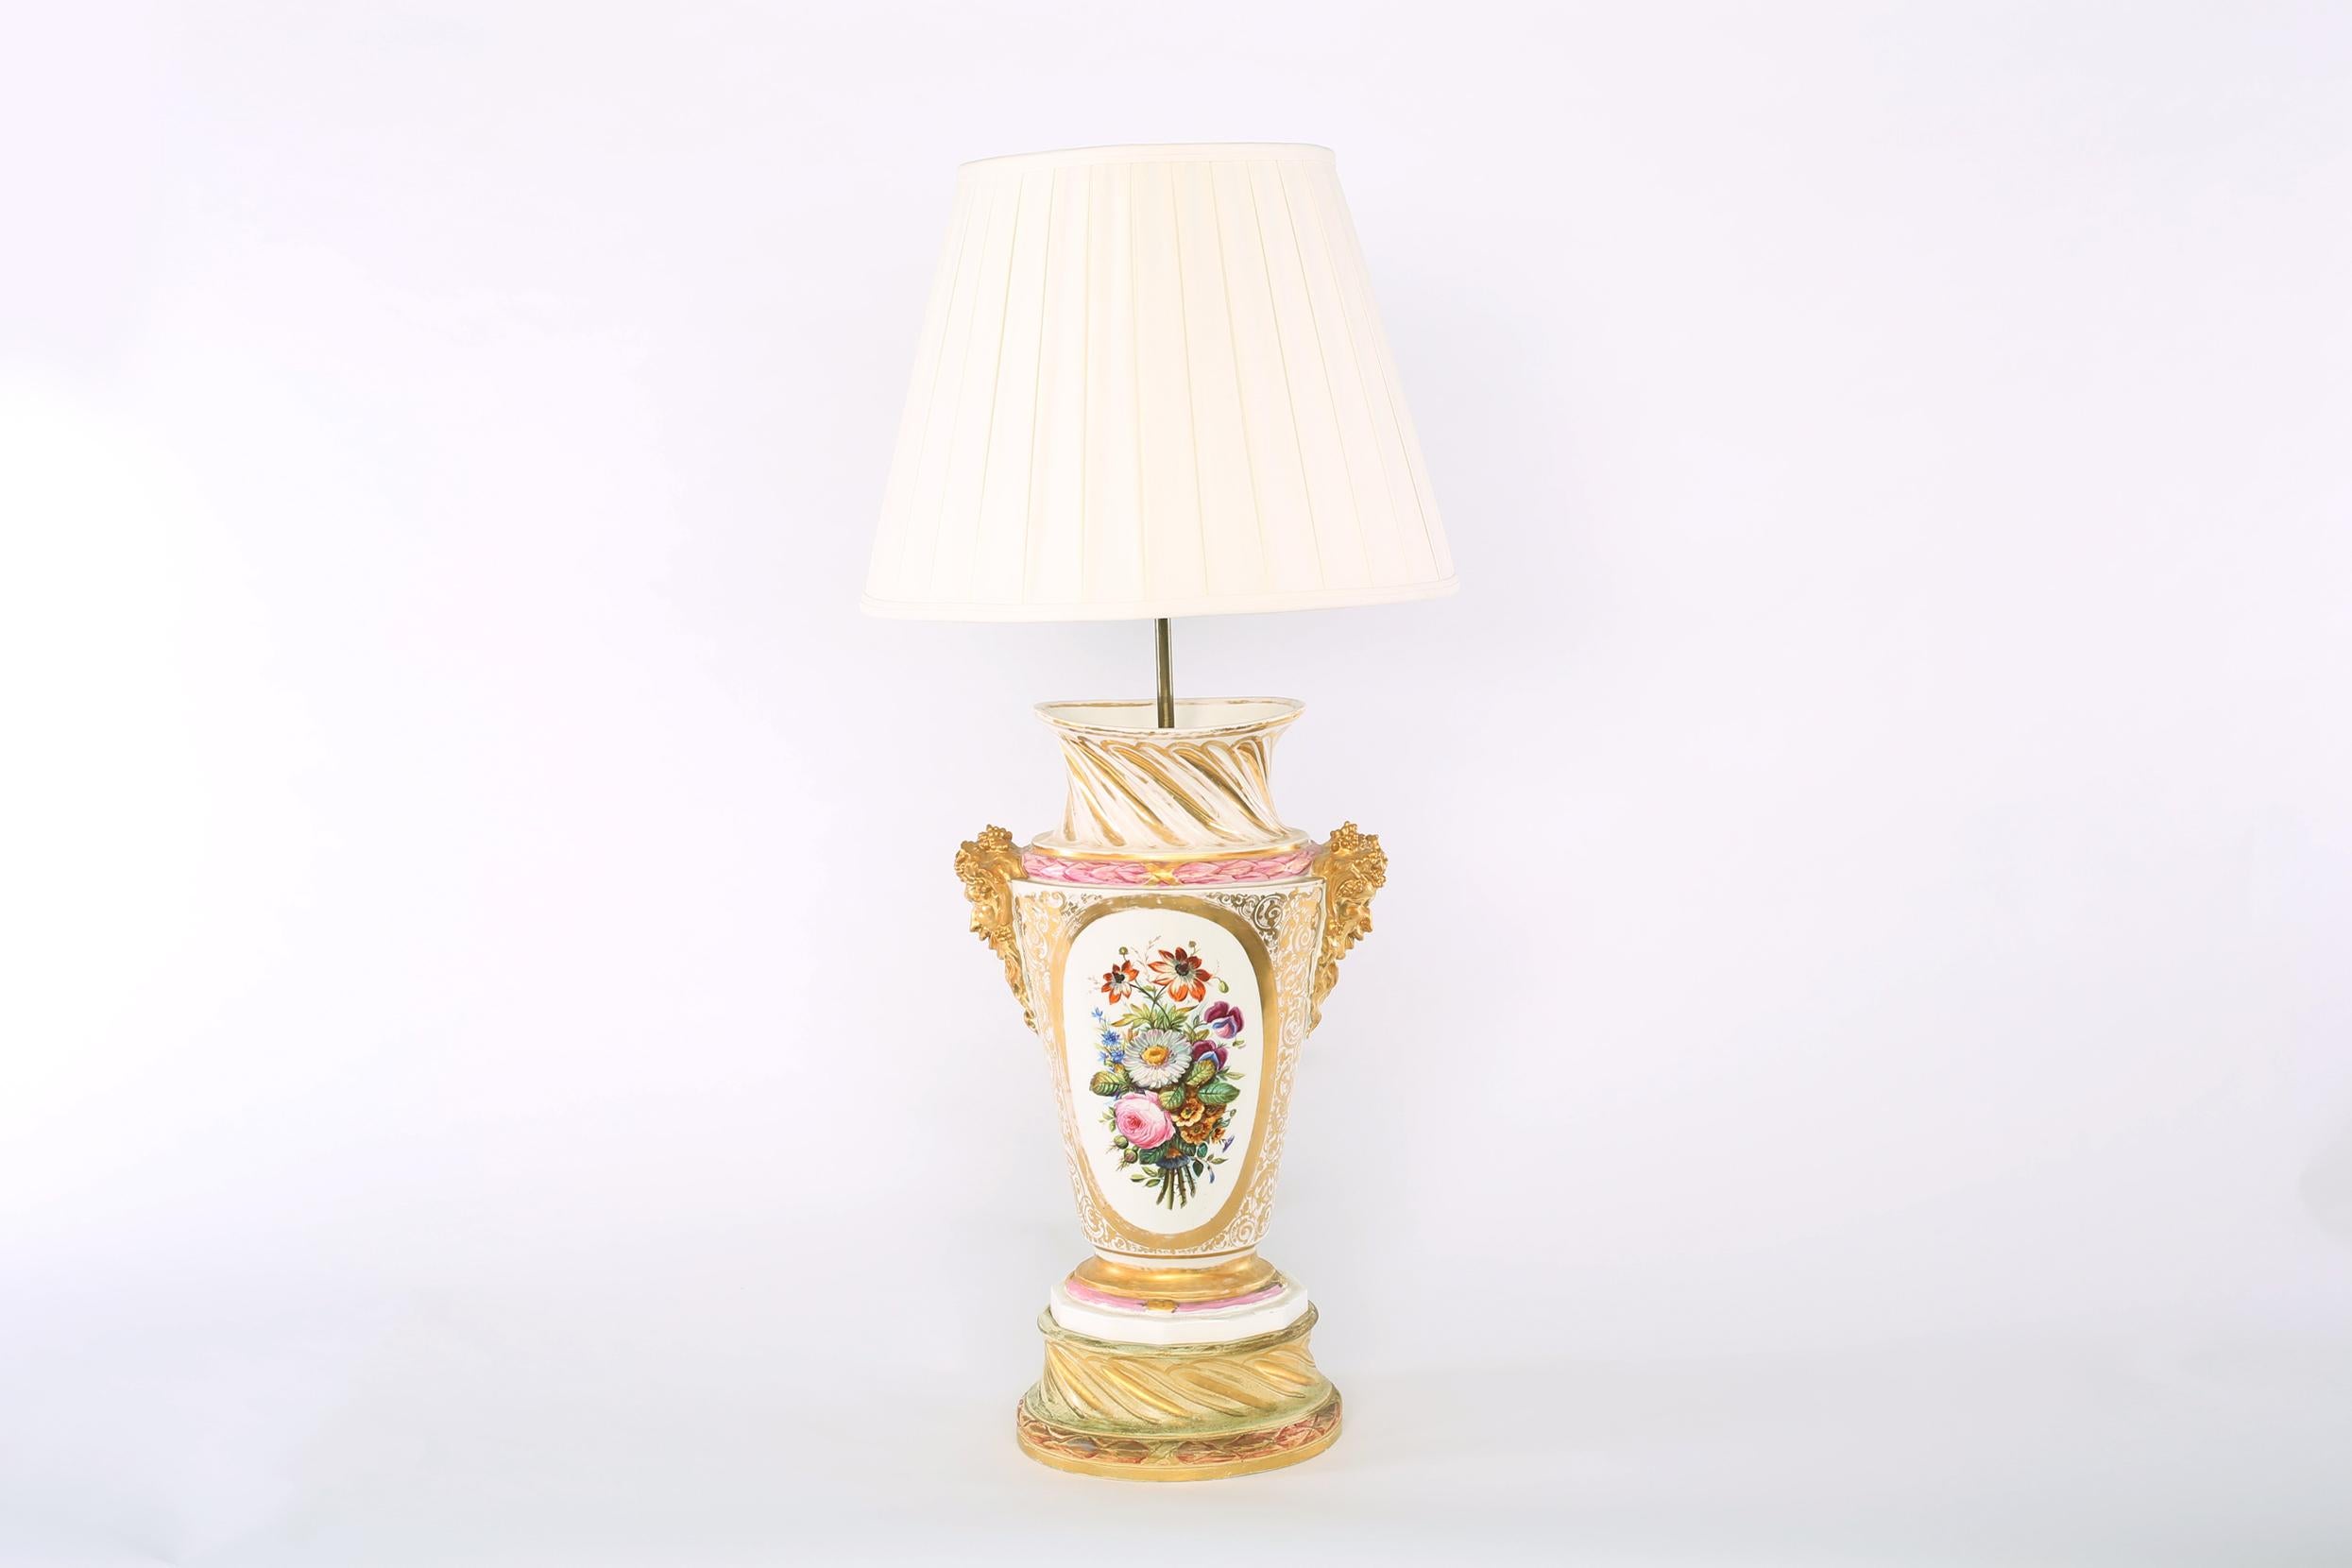 Großes Paar vergoldet Porzellan Urne Form mit äußeren floralen Design Details Tisch / Tischlampen. Jede Lampe ist in gutem Zustand. Leichte alters- und gebrauchsbedingte Gebrauchsspuren. Jede Lampe stehen etwa 38,5 cm hoch x 18 cm breit. Jeder kommt